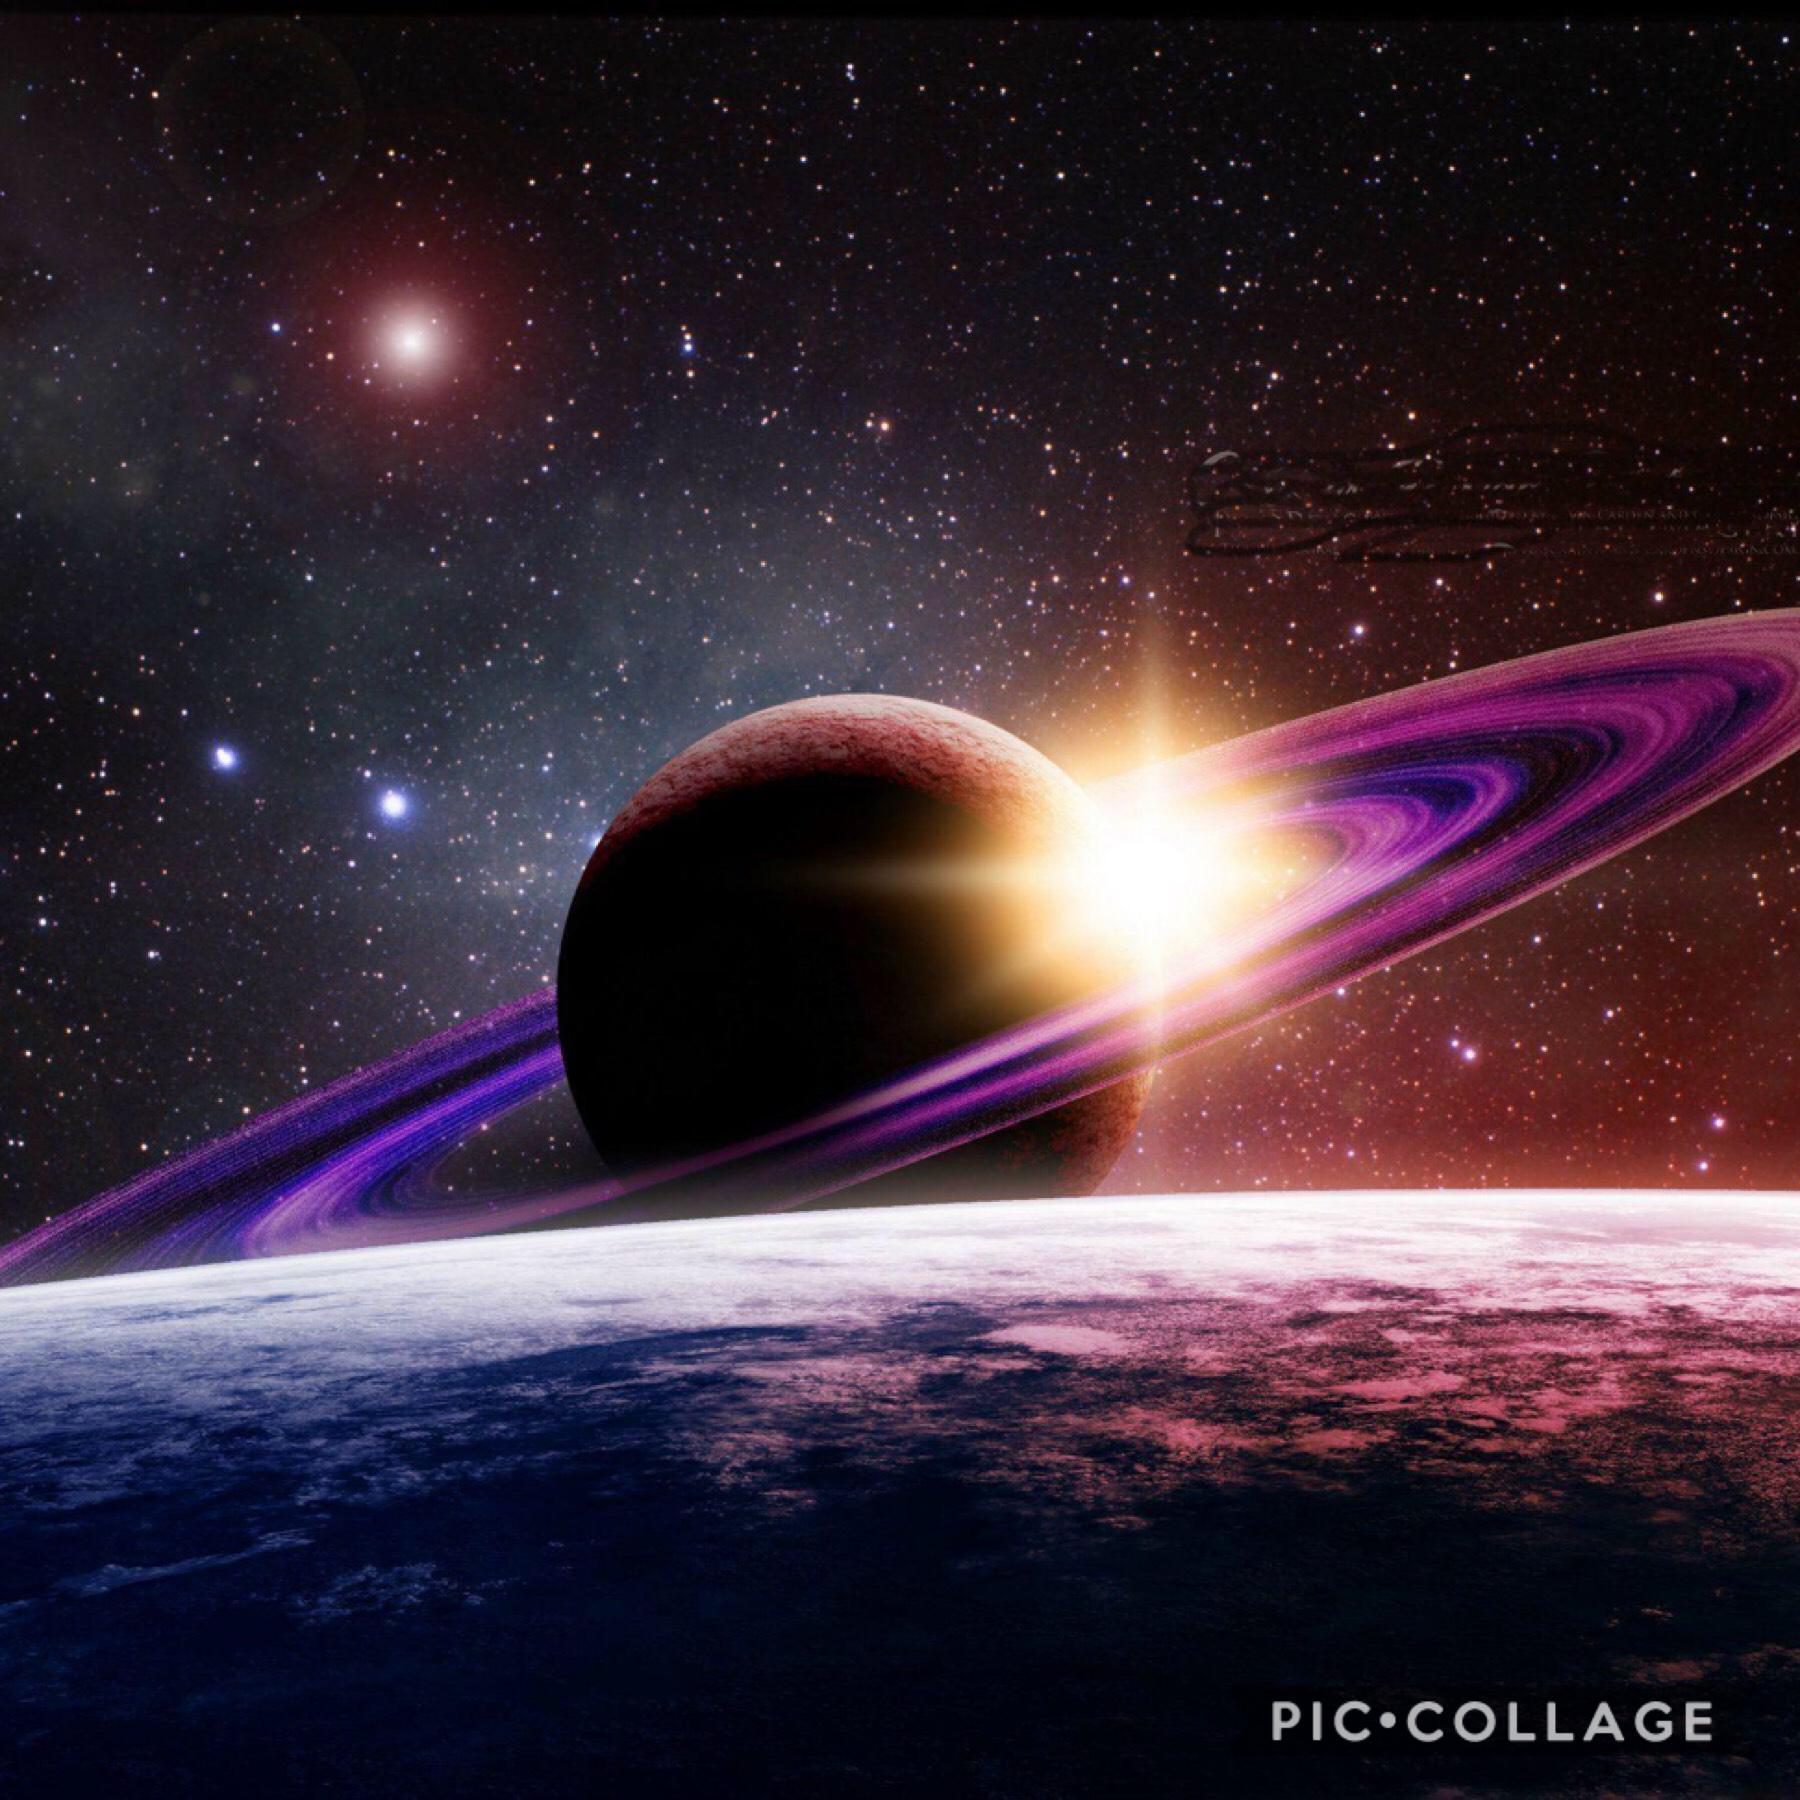 Omg Saturn is my 2nd fav planet, like it u love space 